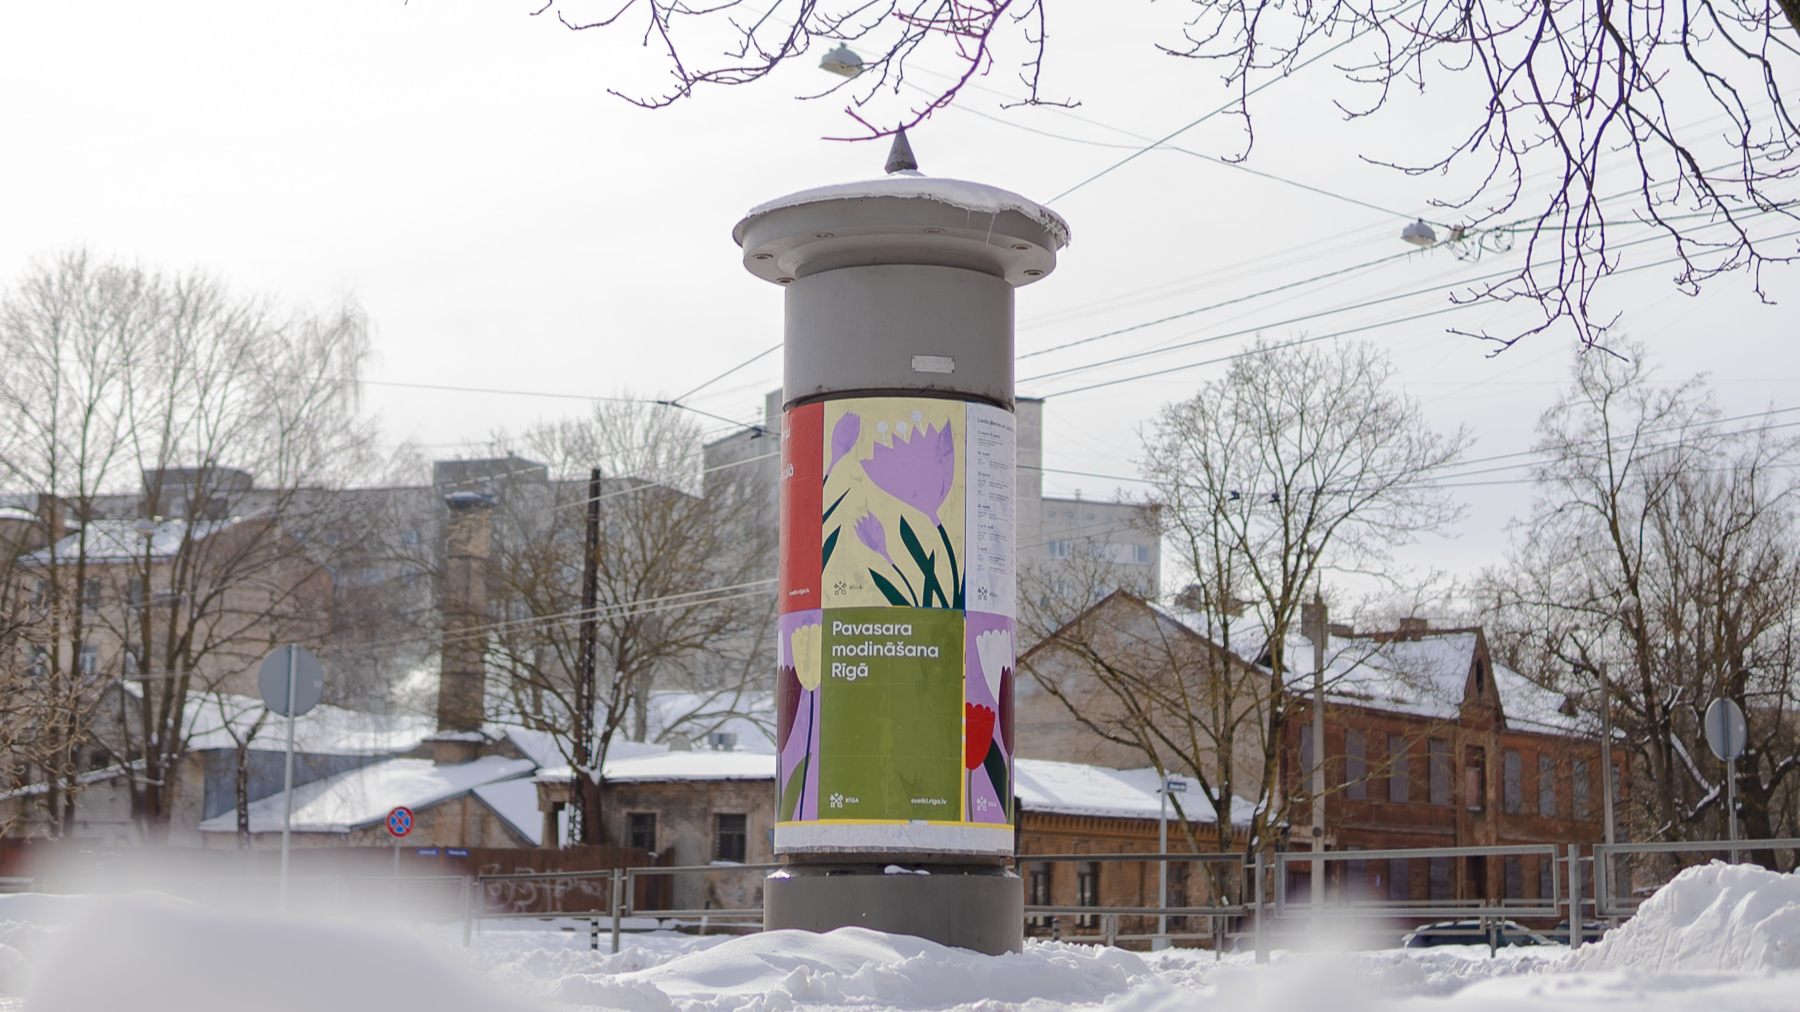 Ar krāšņu pilsētvides noformējumu un plašu kultūras programmu Rīgā modinās pavasari